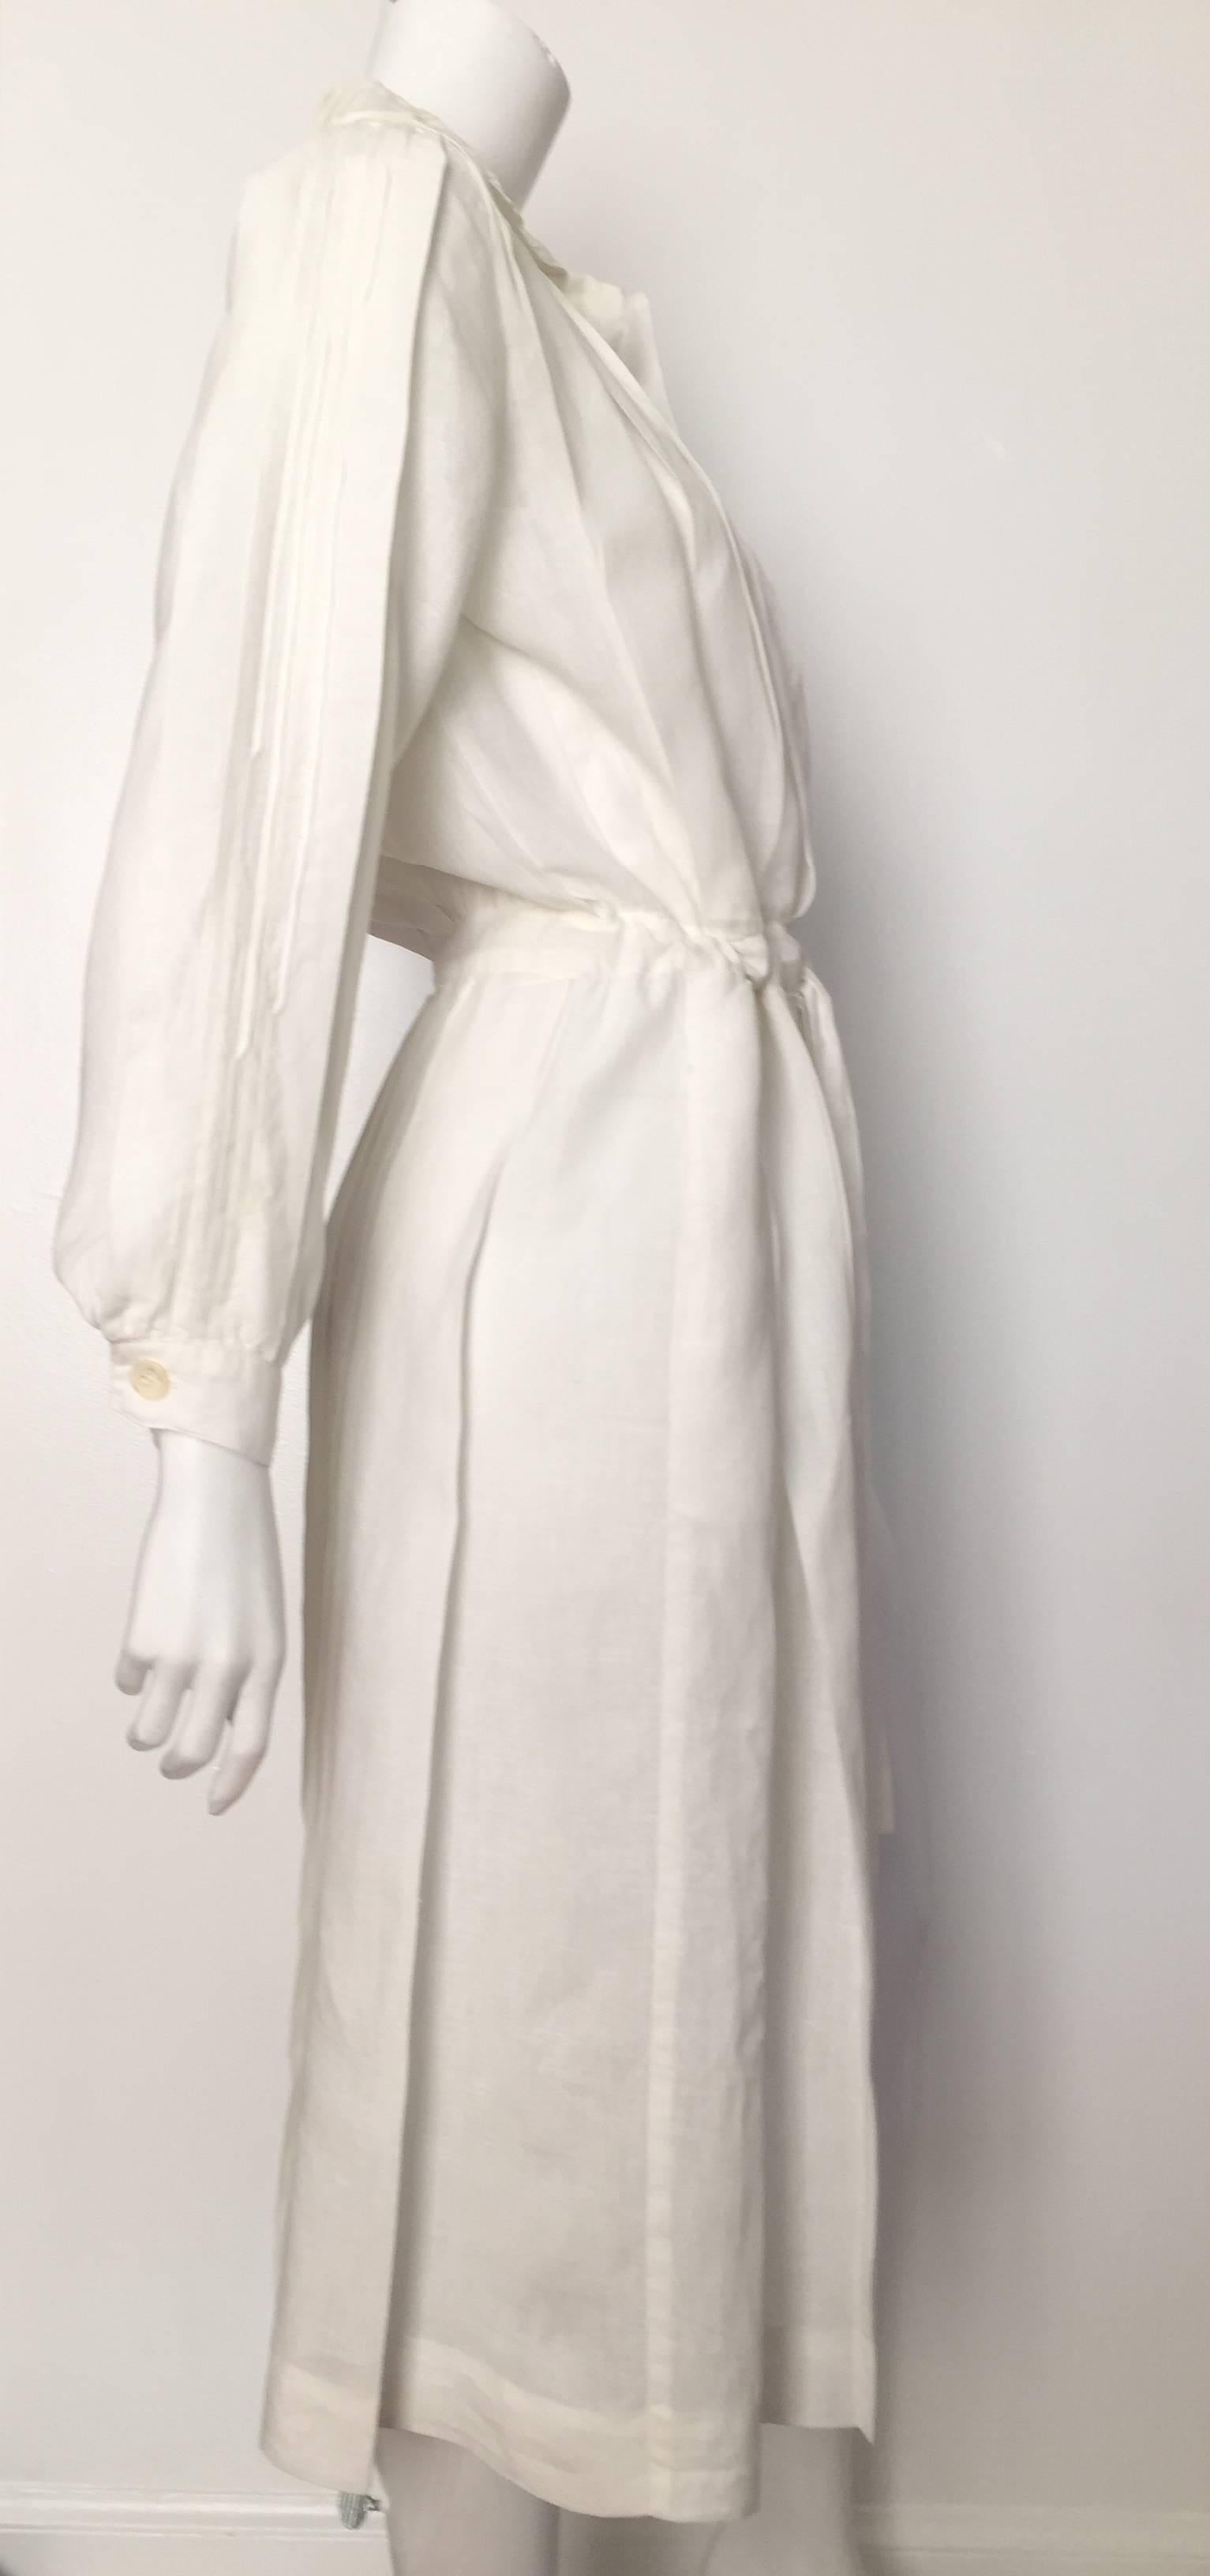 Women's Laura Biagiotti for Bonwit Teller 80s white linen dress size 4 / 6.  For Sale